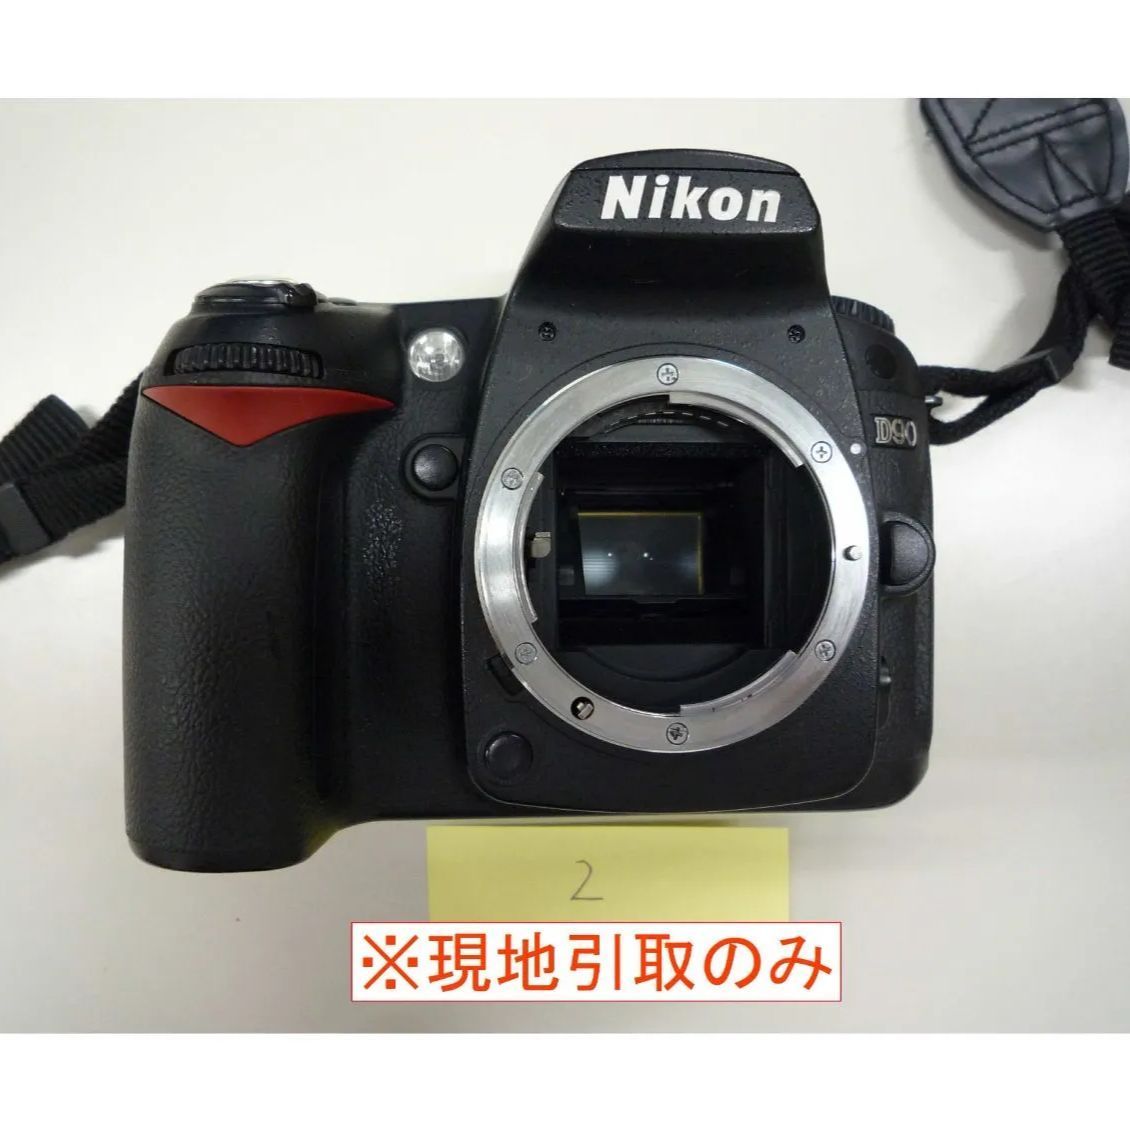 ジャンク品、現地引取のみ】Nikon デジタル一眼レフカメラ D90(2